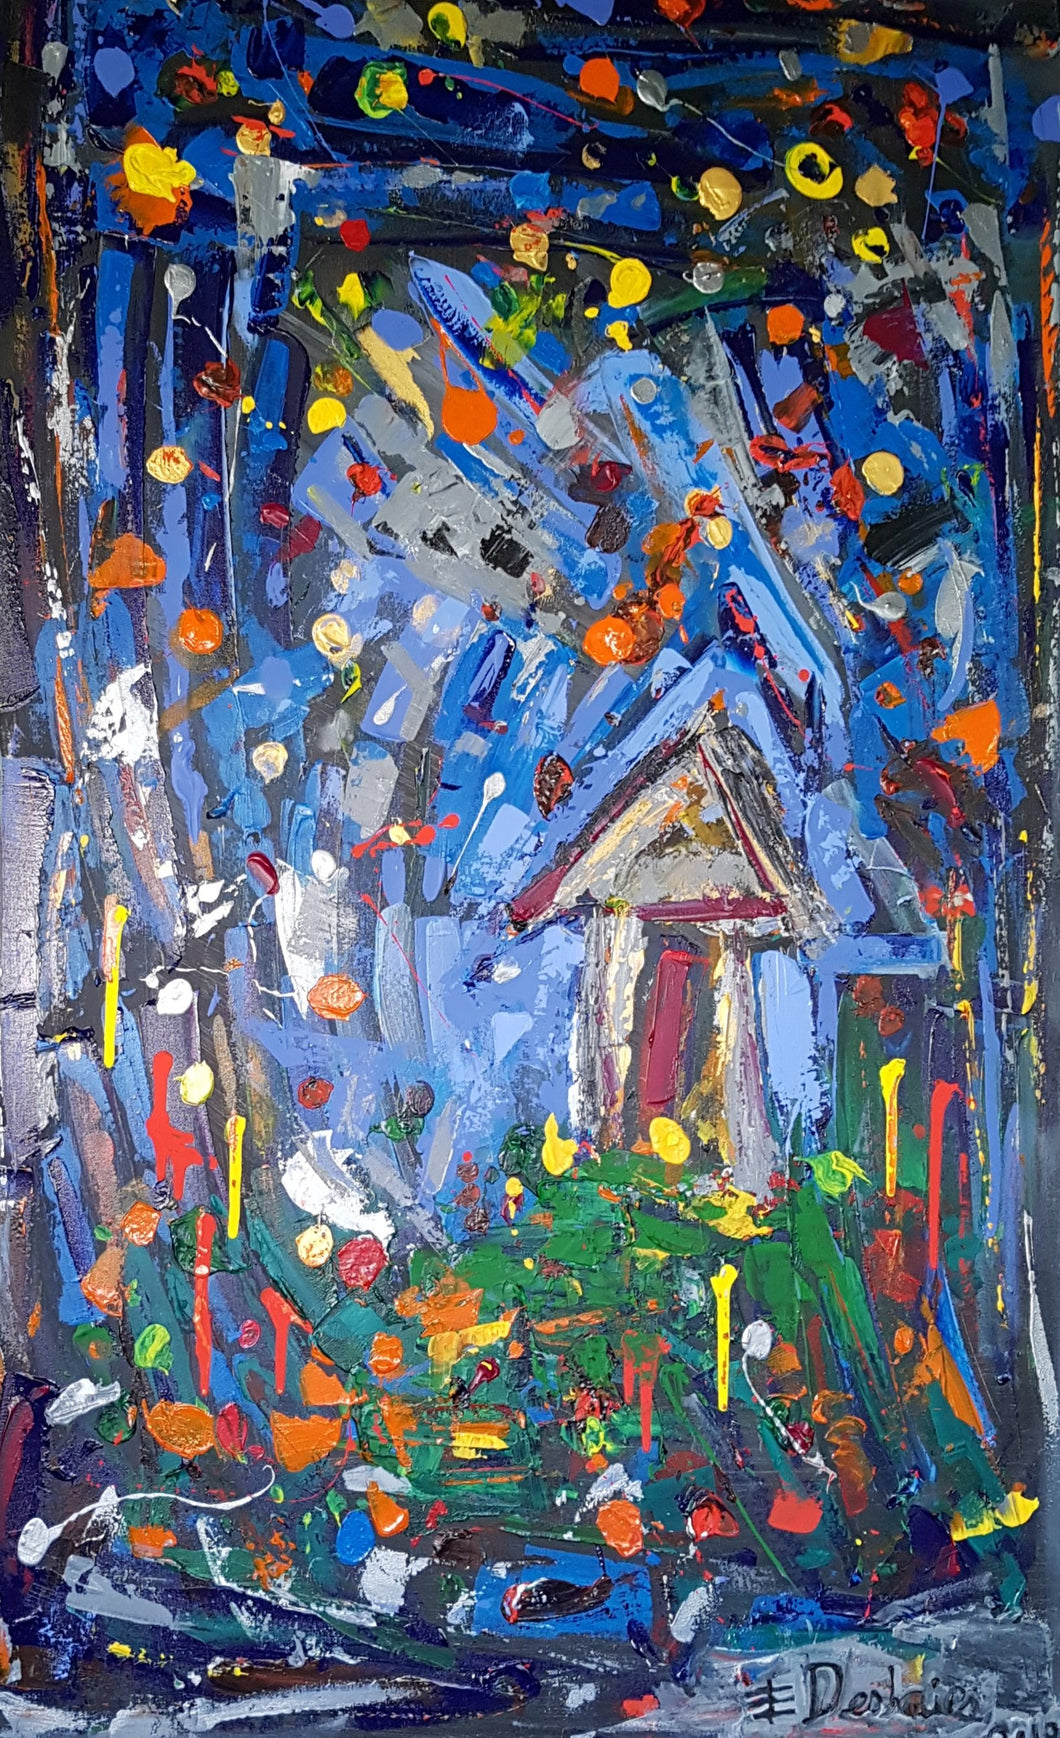 THE TINY HOUSE - La Petite Maison / Original Canvas Painting - By Eric Deshaies